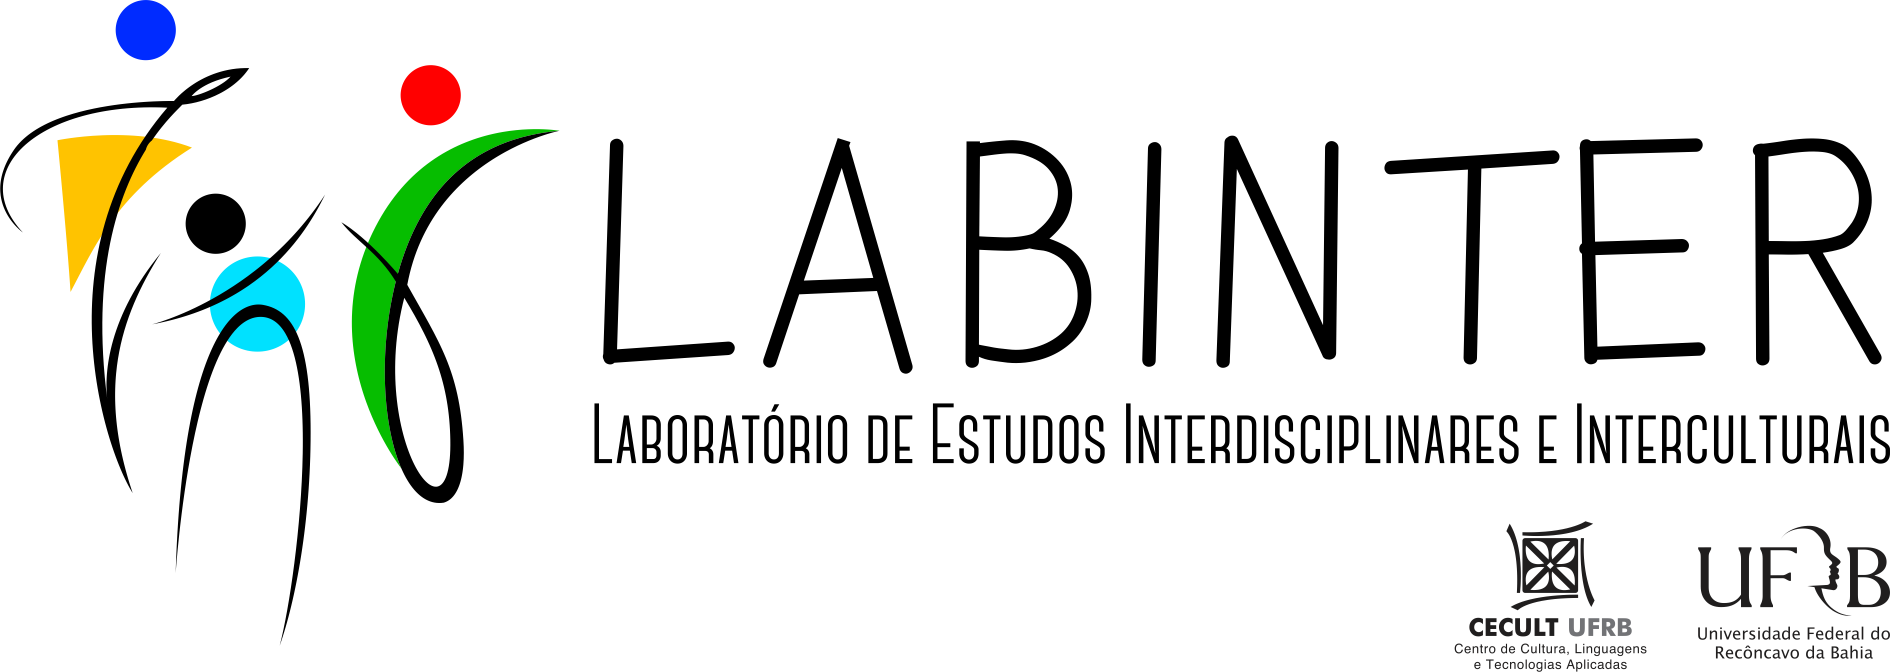 Logo Horizontal